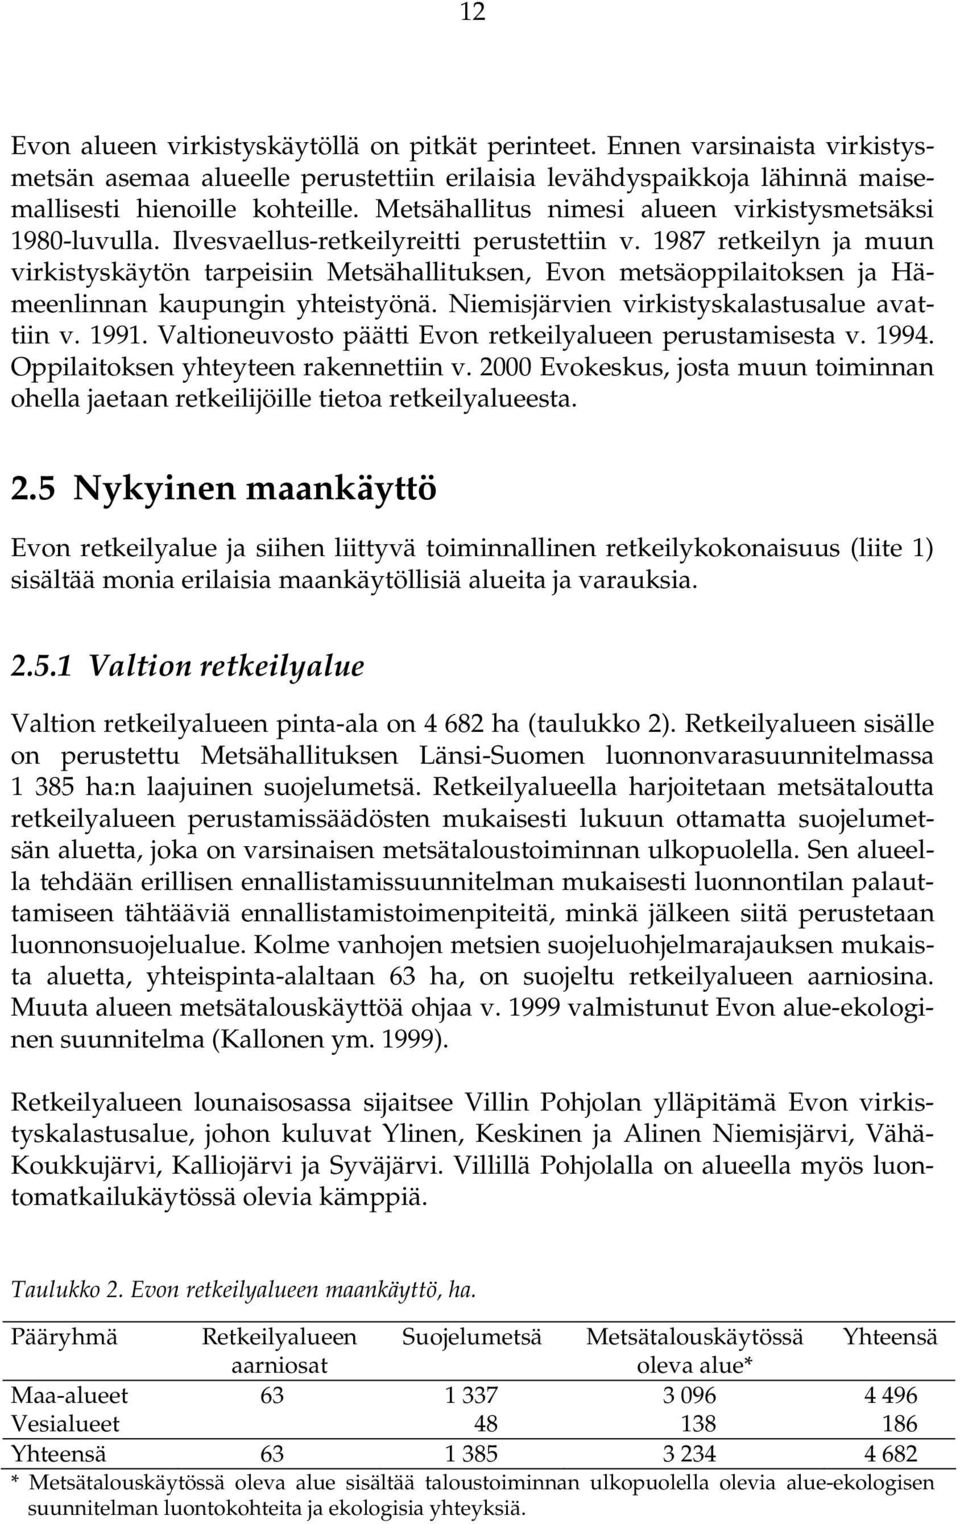 1987 retkeilyn ja muun virkistyskäytön tarpeisiin Metsähallituksen, Evon metsäoppilaitoksen ja Hämeenlinnan kaupungin yhteistyönä. Niemisjärvien virkistyskalastusalue avattiin v. 1991.